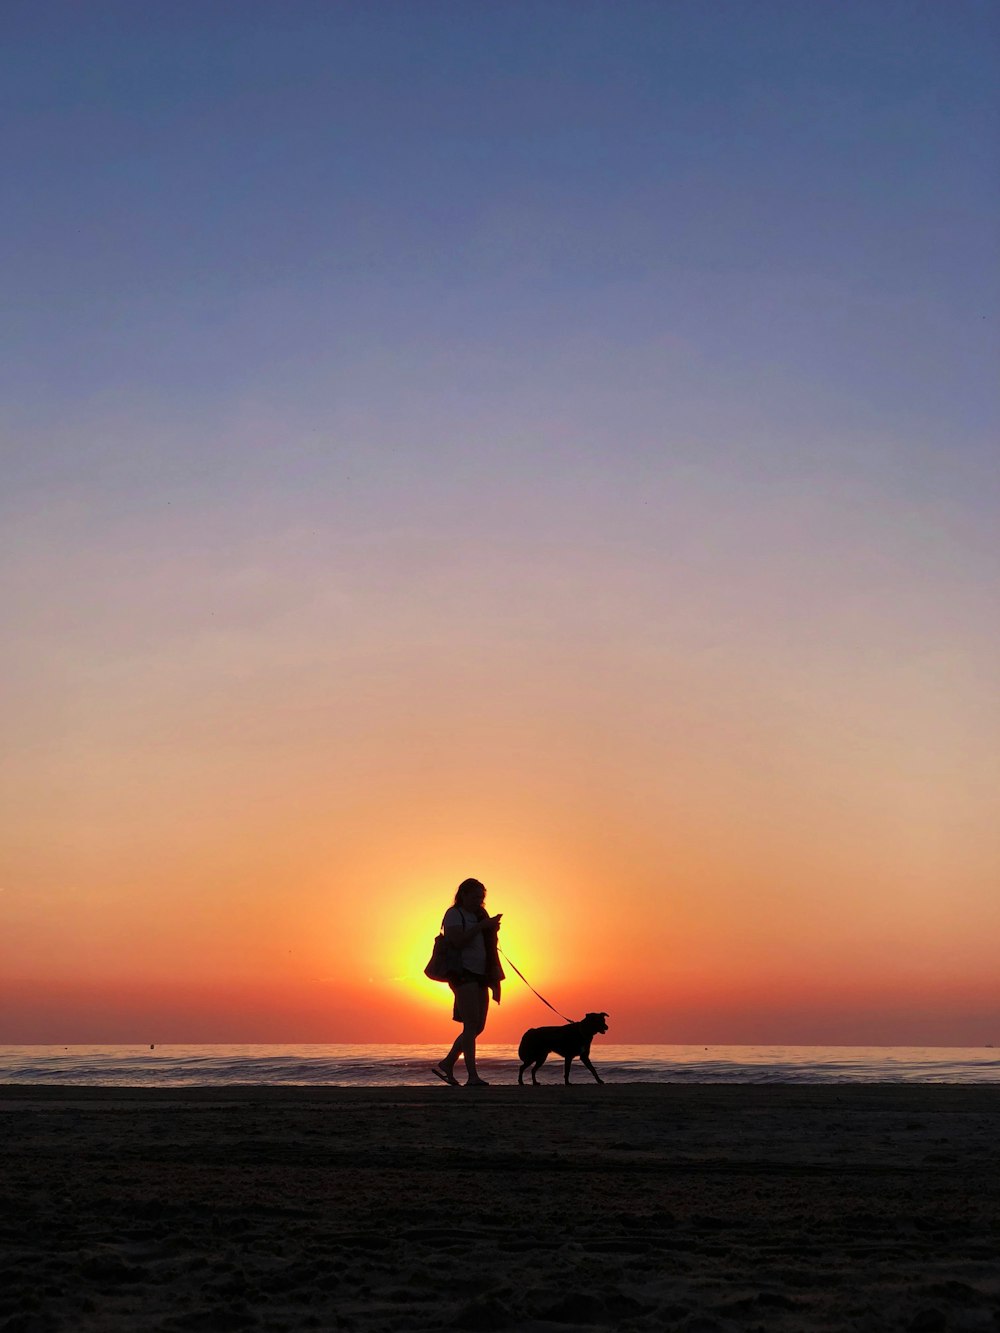 Photographie de silhouette de la personne tenant une laisse pour chien marchant sur le bord de mer pendant l’heure dorée